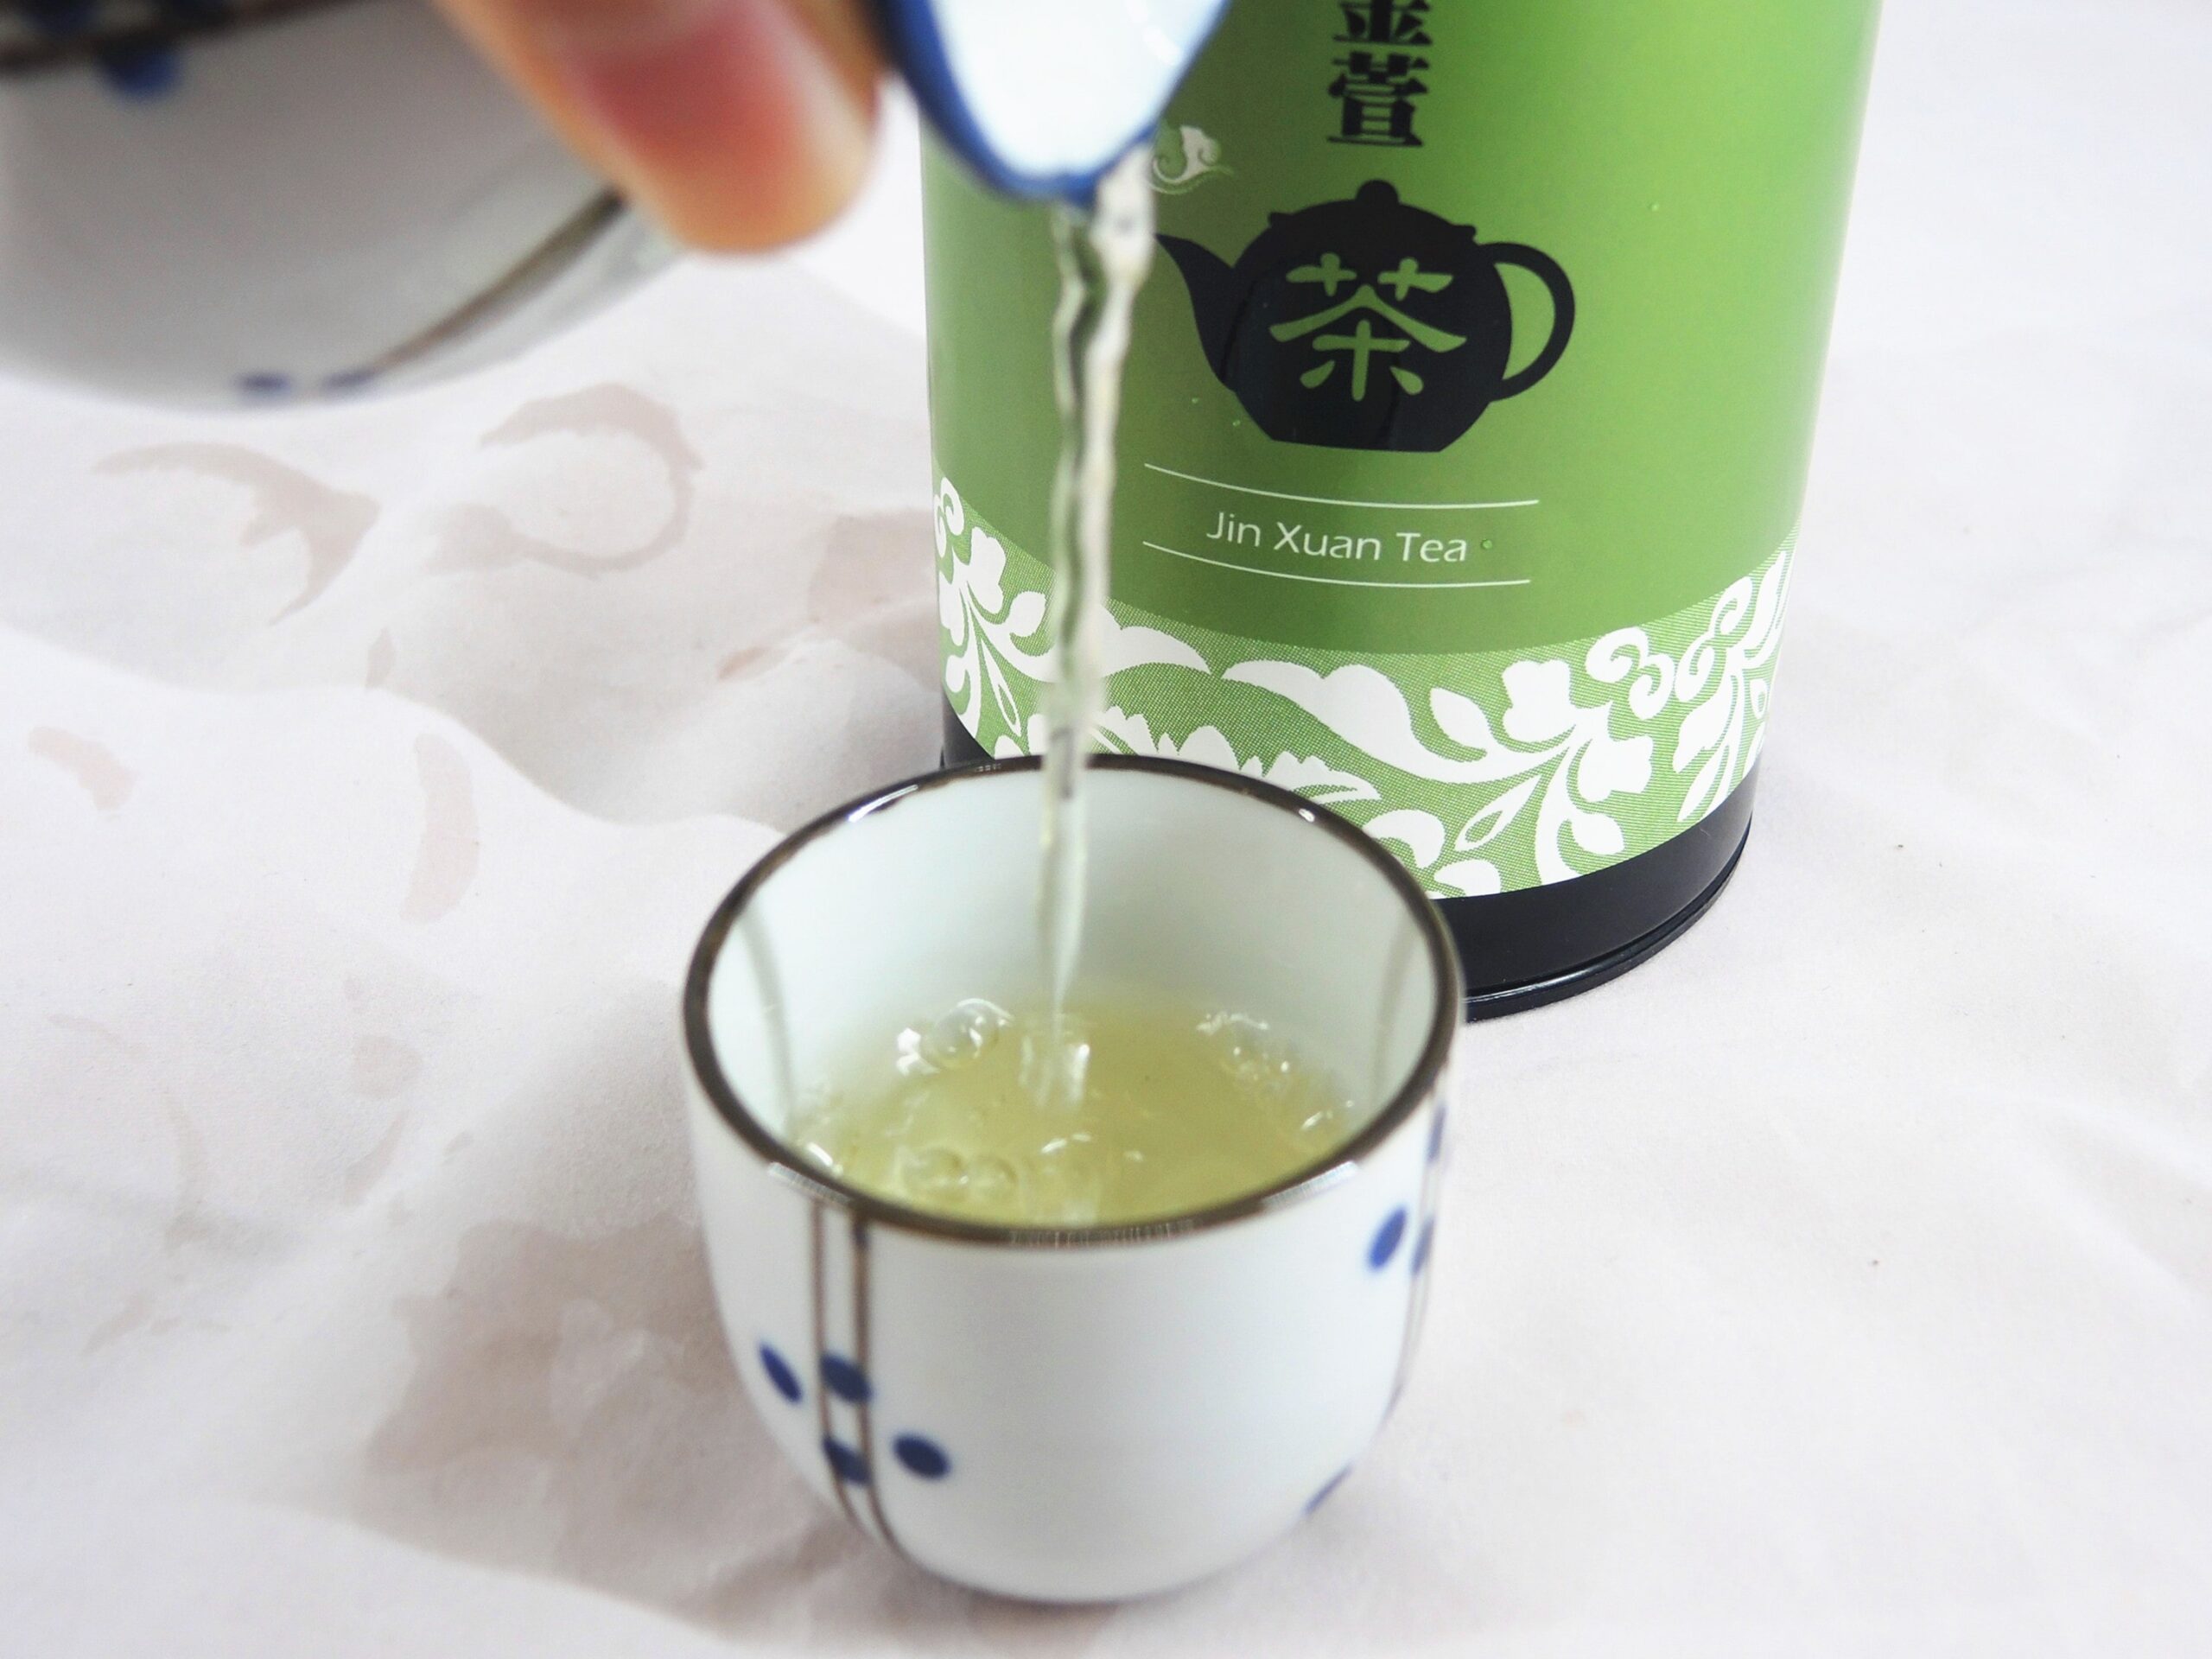 How to boiling Jin Xuan Tea